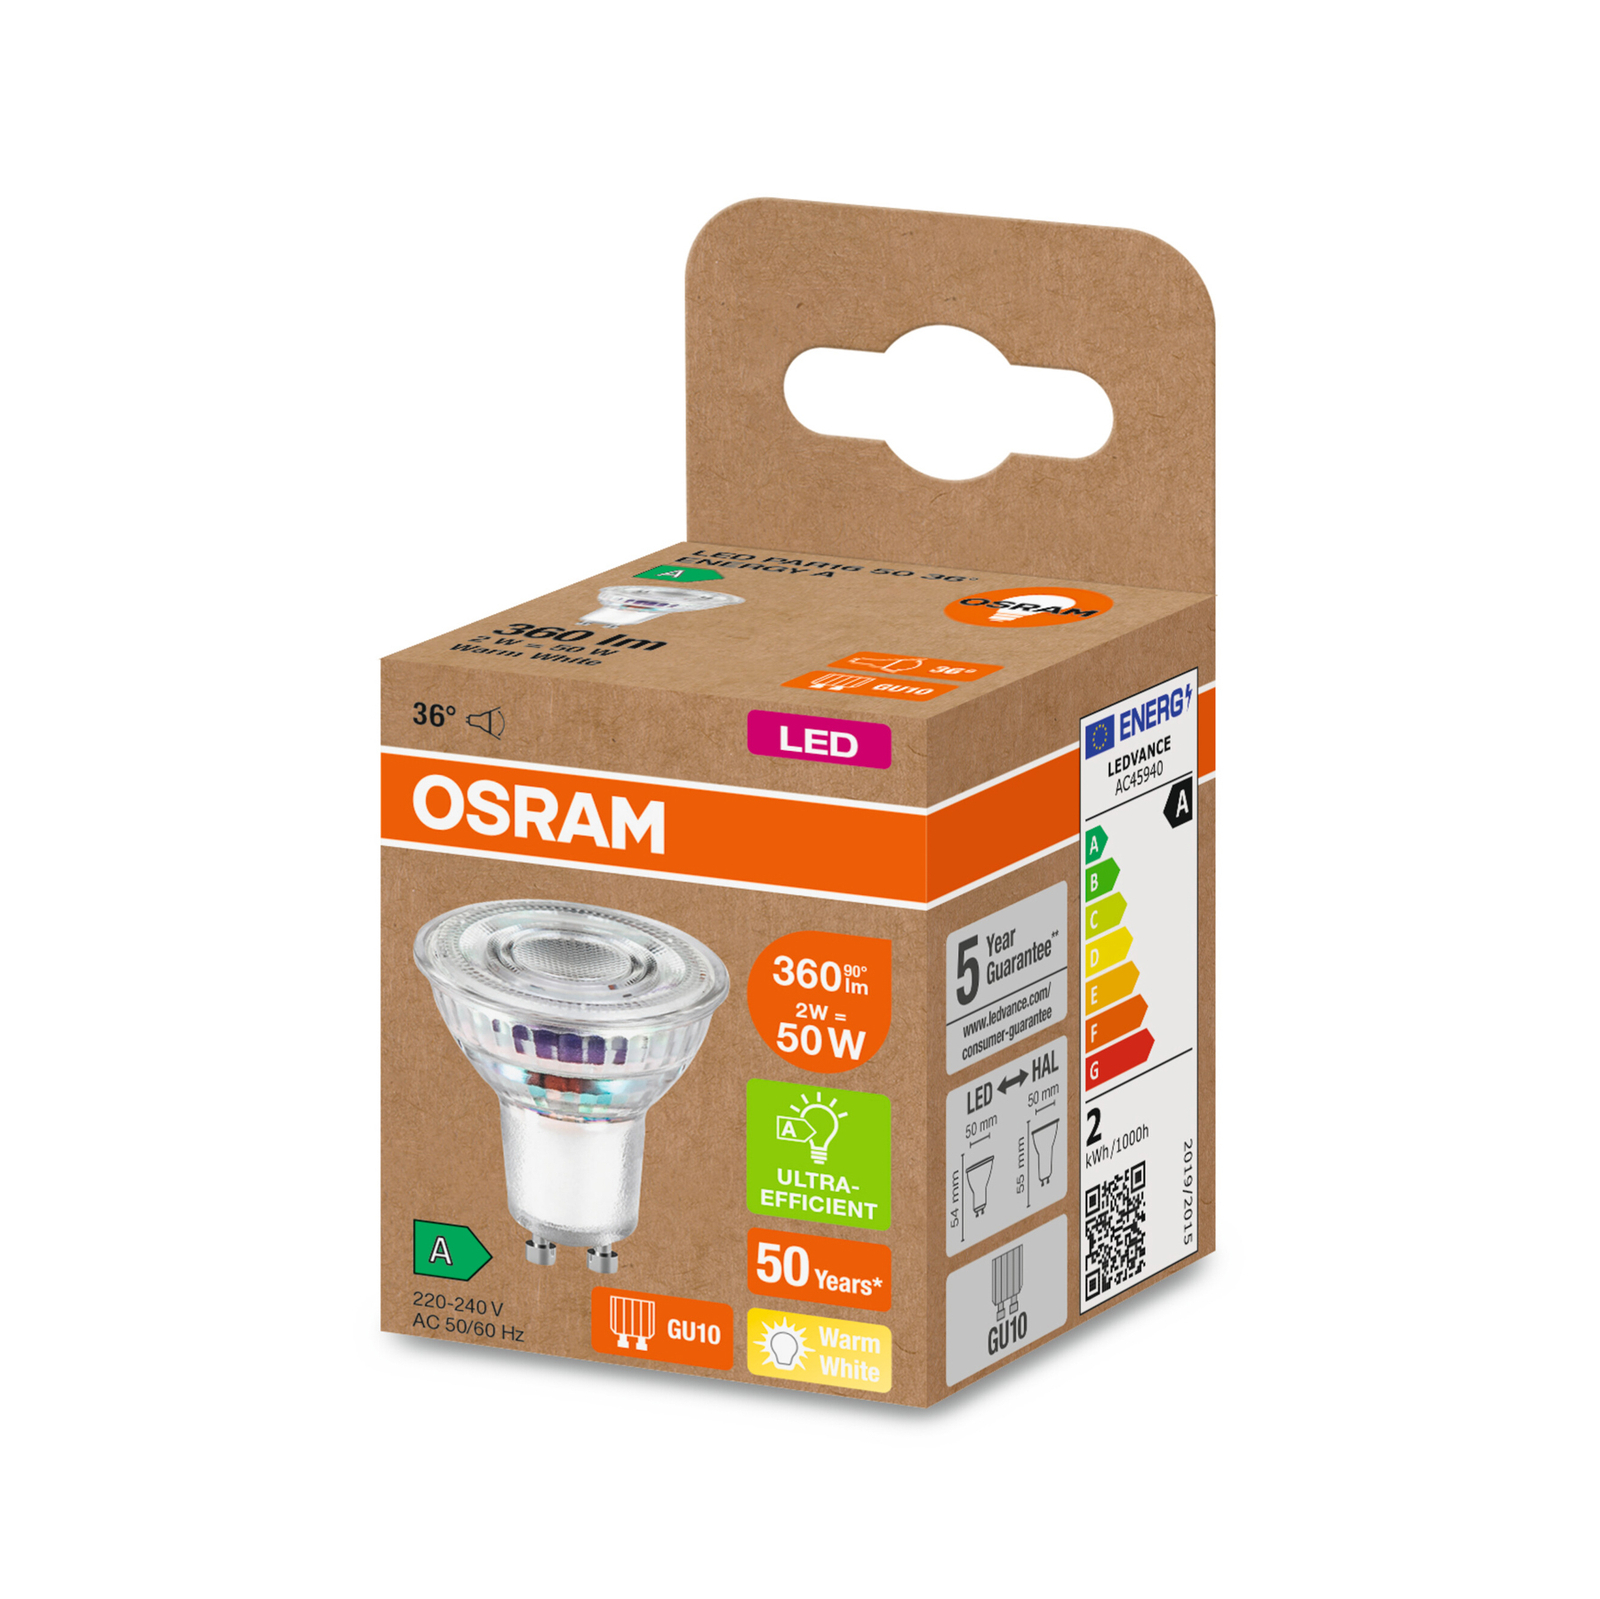 OSRAM reflector LED bulb GU10 2W 360lm 827 36°